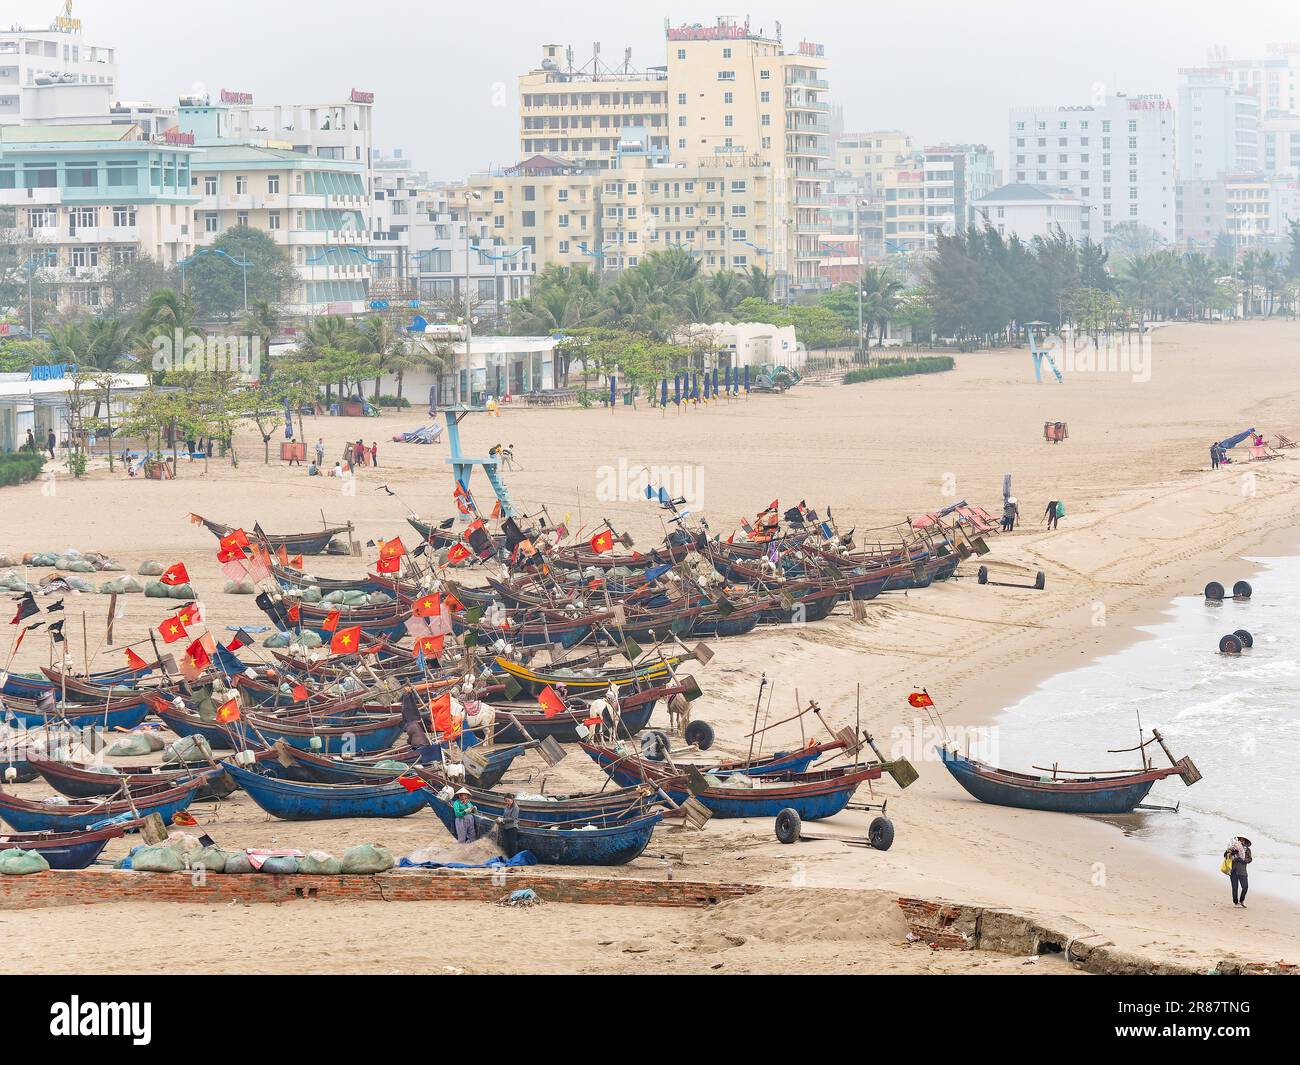 Des bateaux de pêche vietnamiens traditionnels ont été pêchés par une journée hache à Sam son Beach, dans la province de Thanh Hoa au Vietnam. Hôtels et stations balnéaires le long de la plage v Banque D'Images